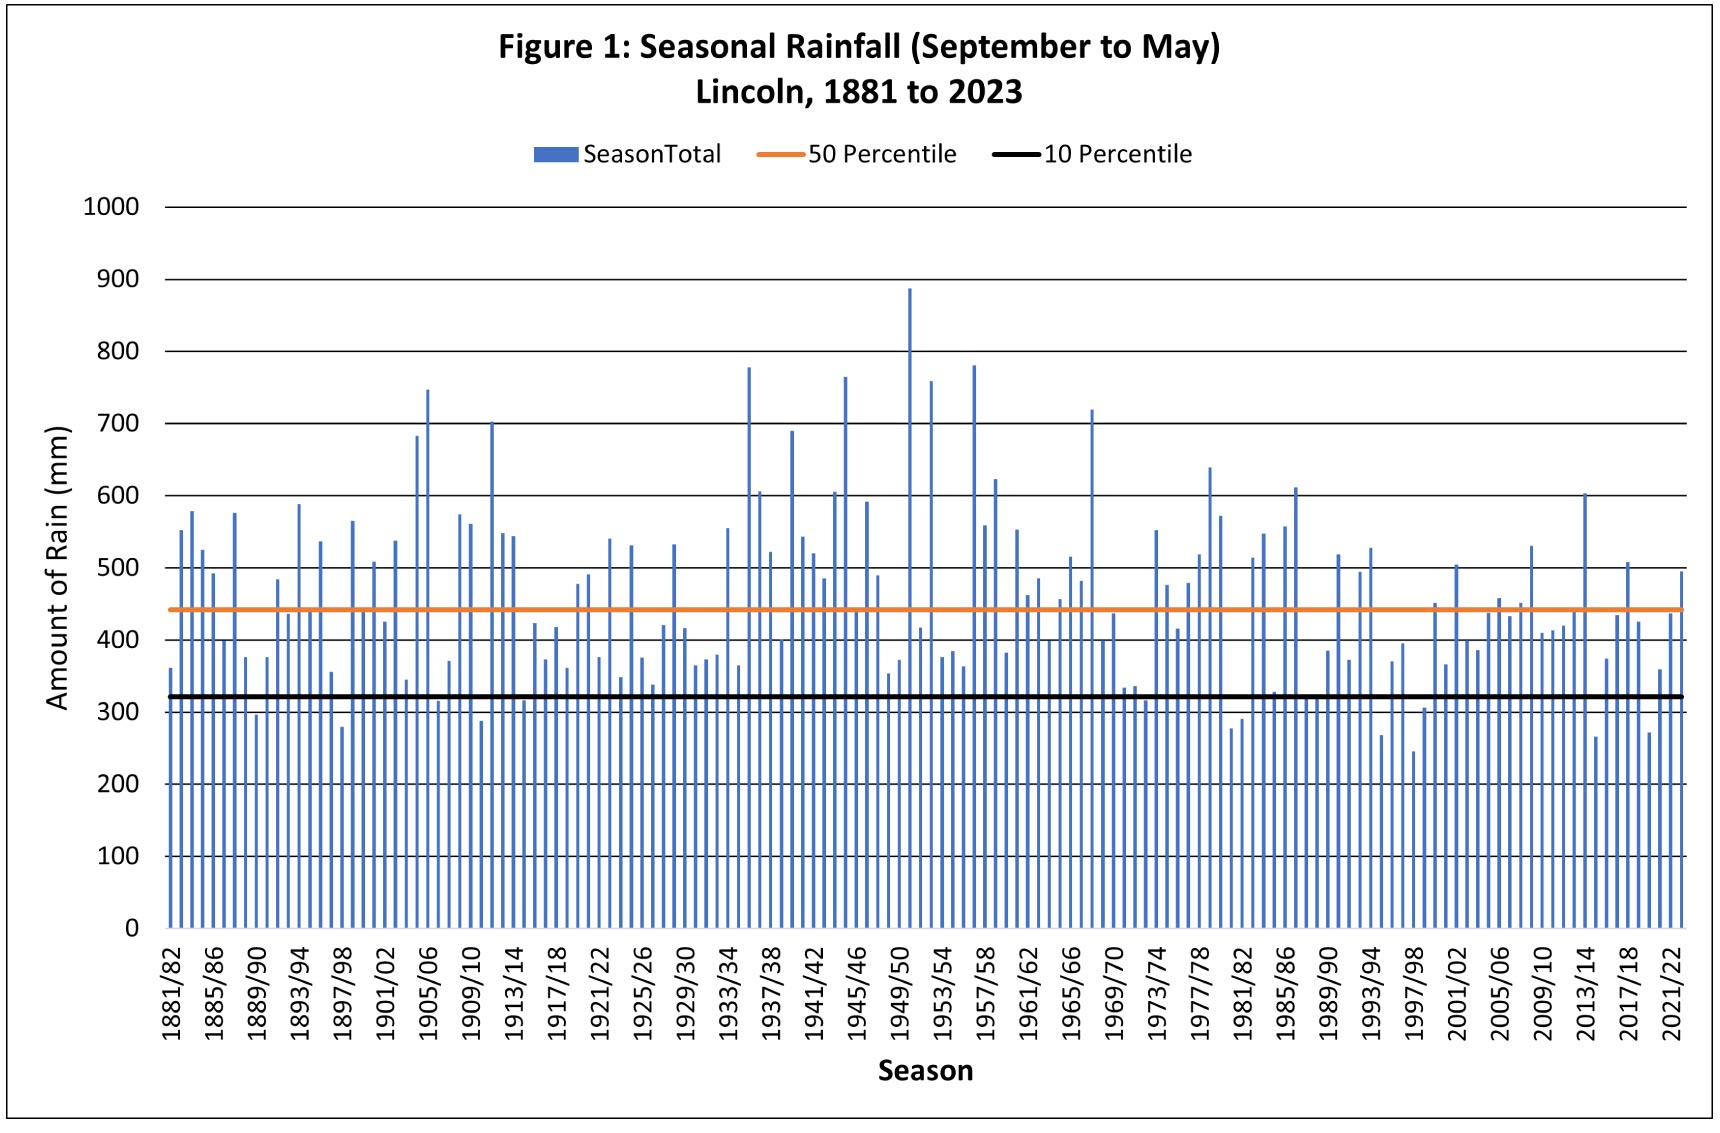 seasonal-rainfall-lincoln-1881-2023-aqualinc